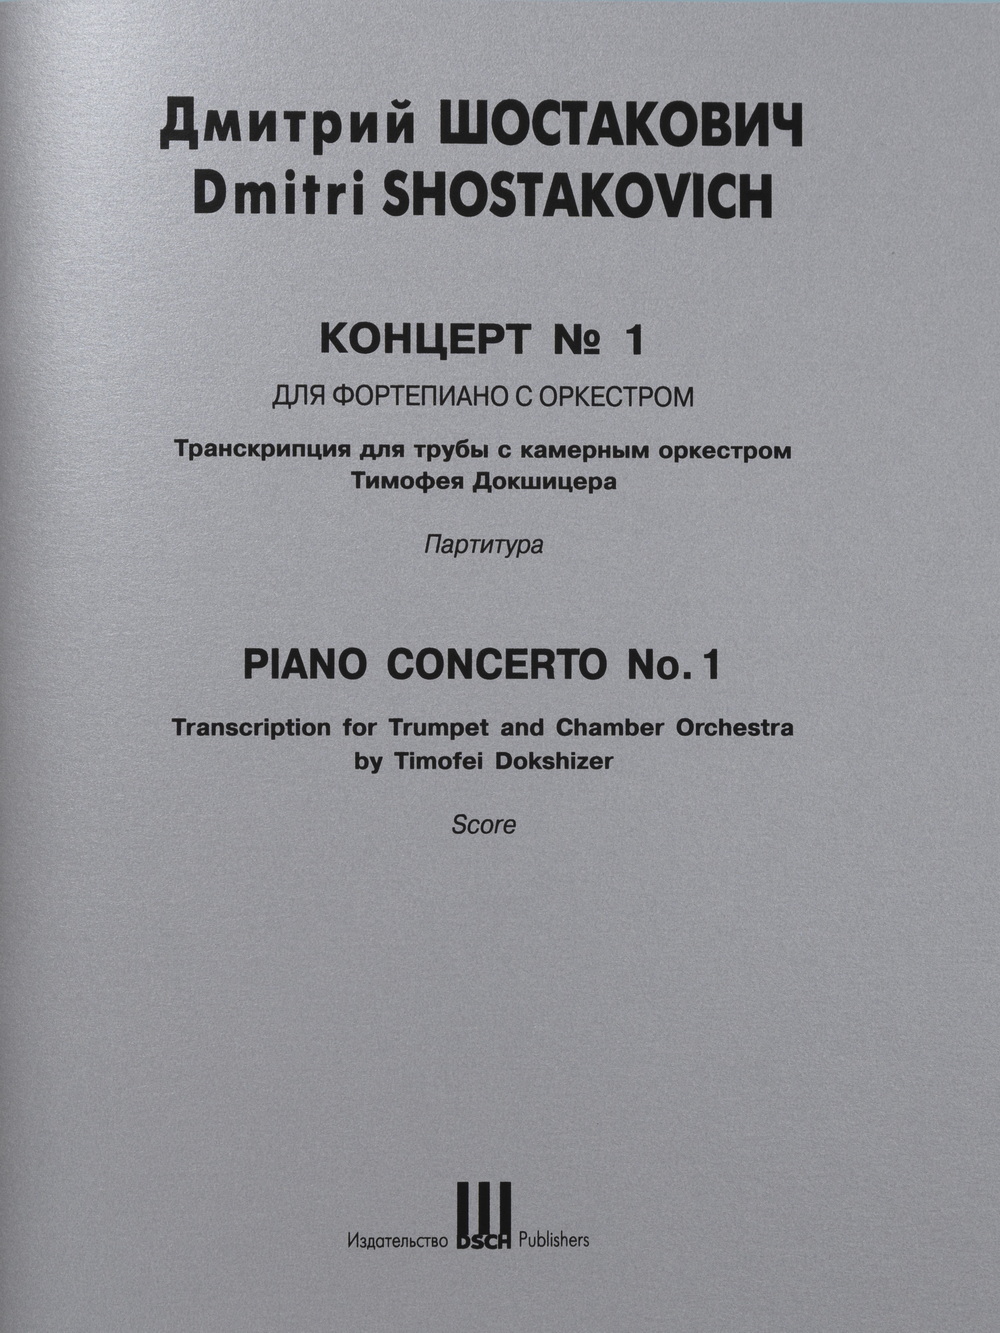 Концерт №1 для фортепиано с оркестром. Транскрипция для трубы с камерным оркестром